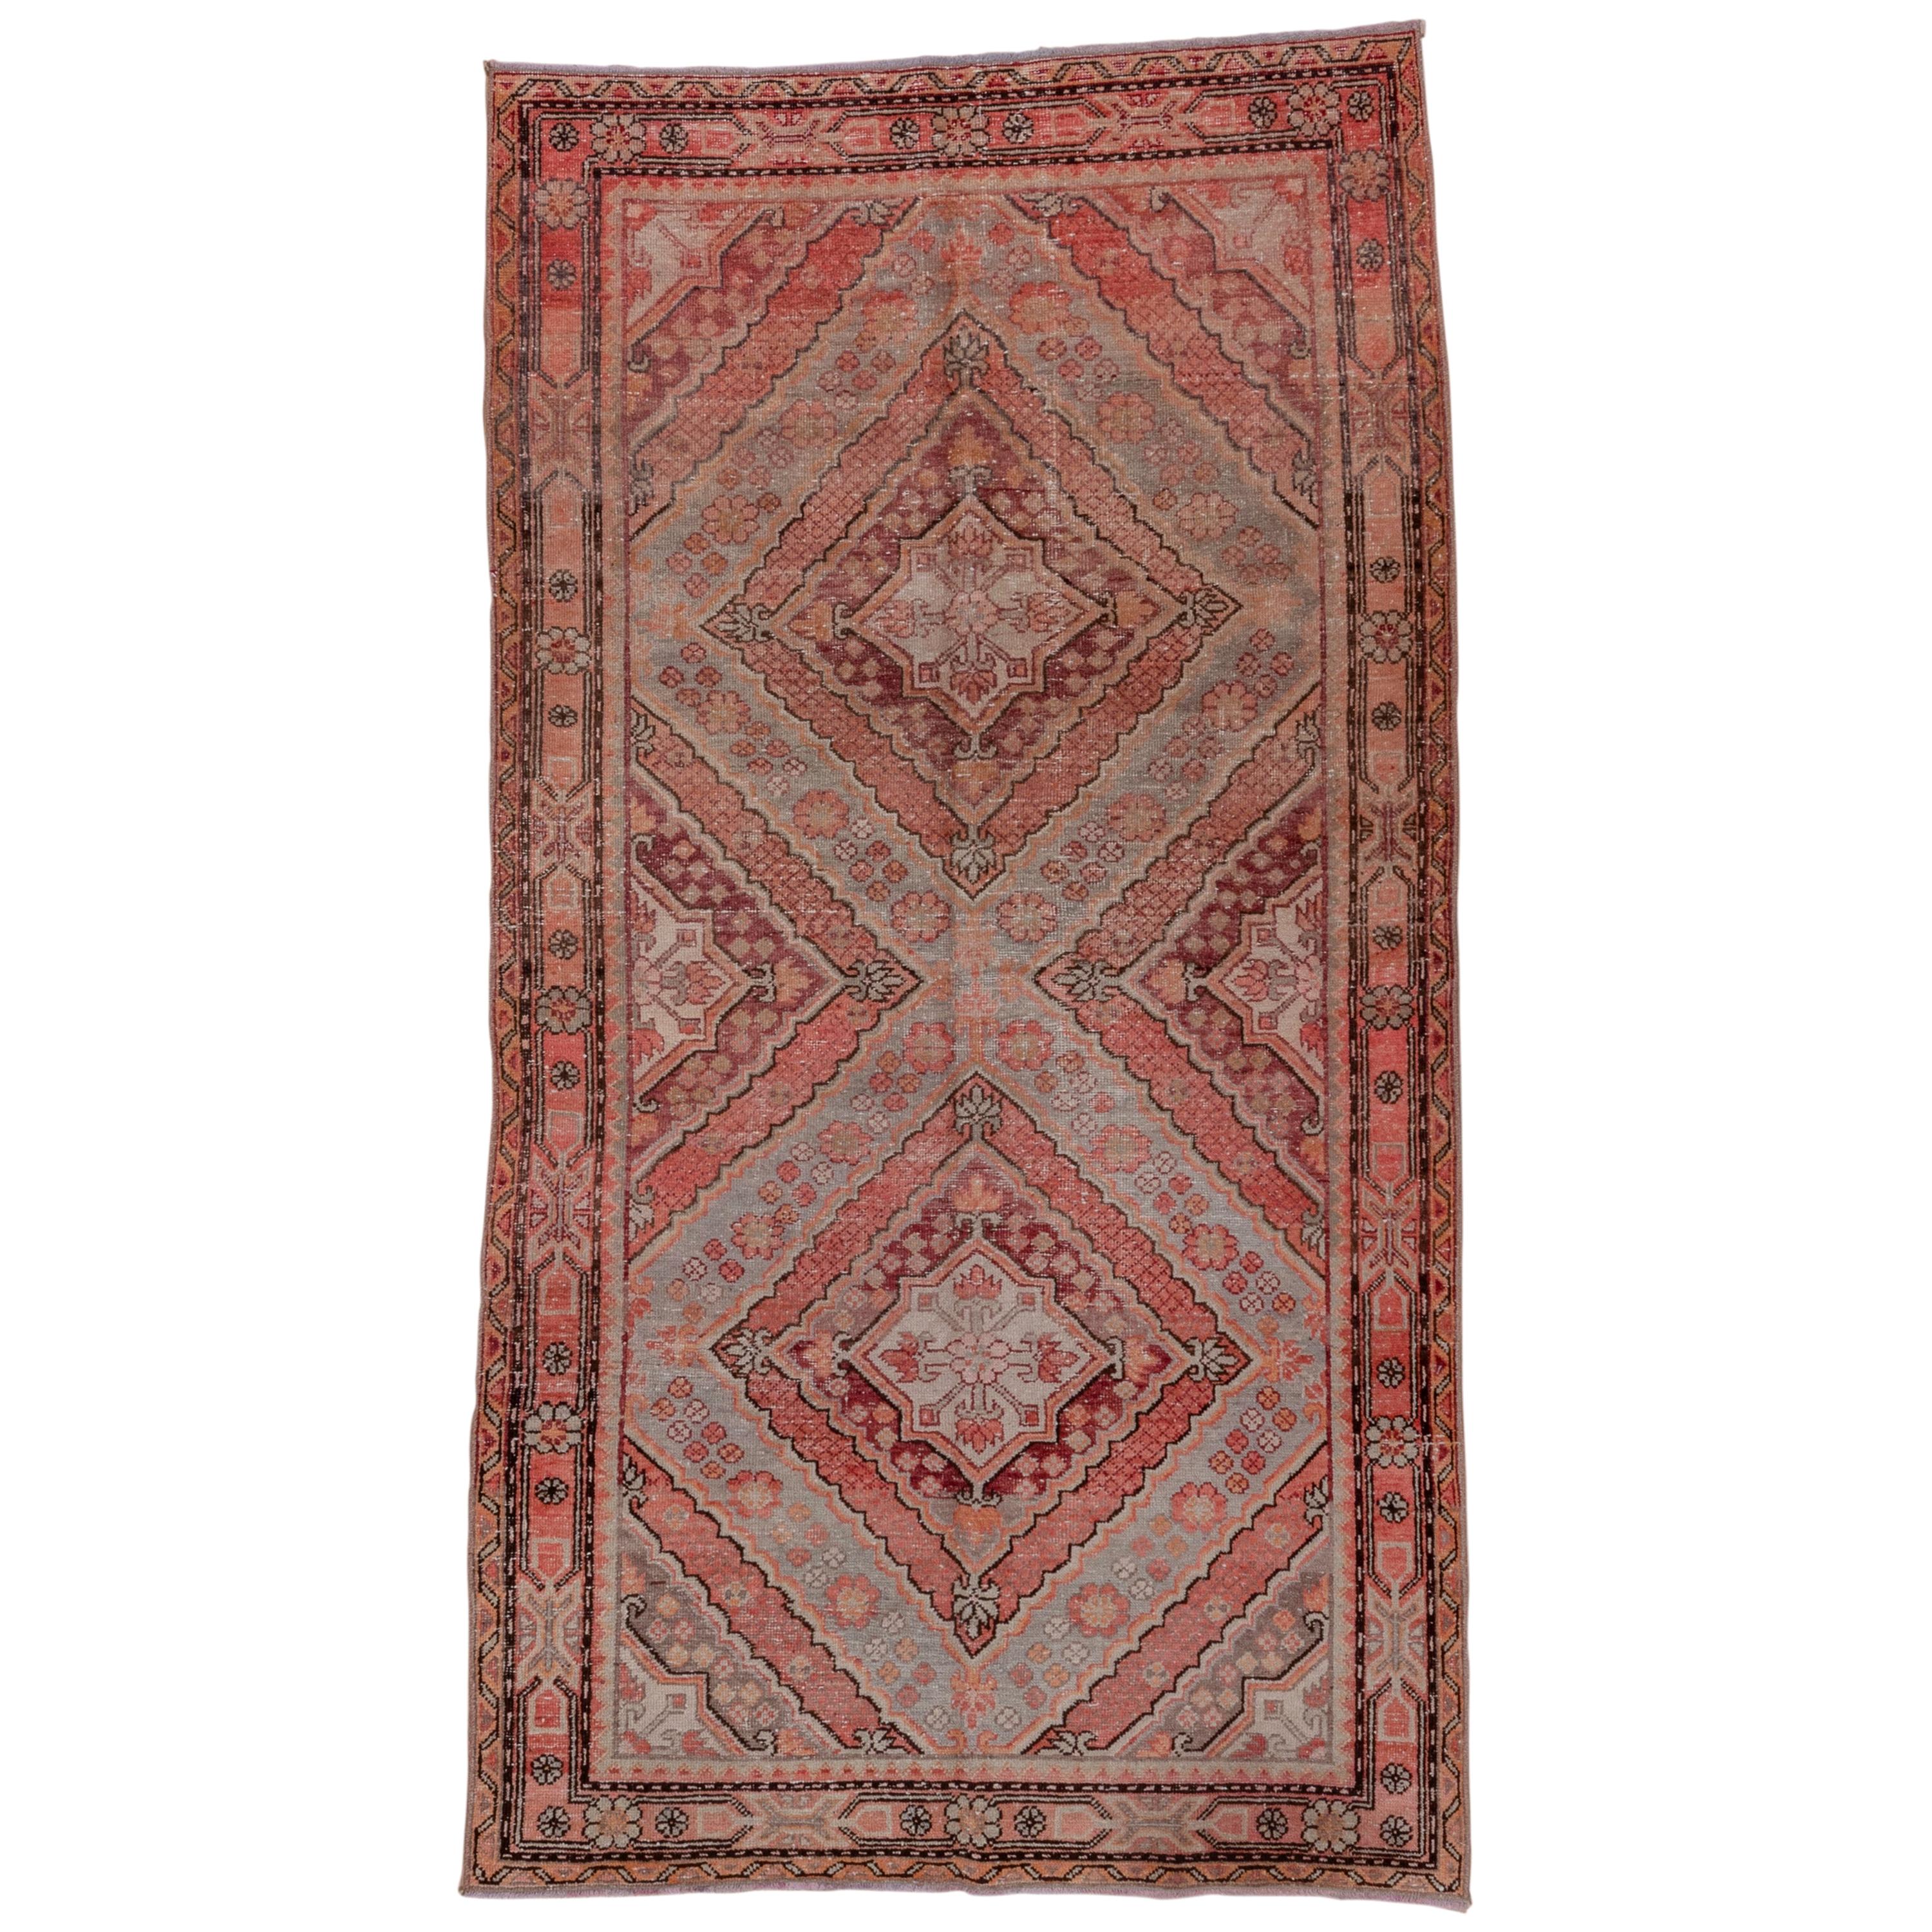 Antique Tribal Khotan Rug, Pink Red Orange and Light Blue Palette Unusual Design For Sale